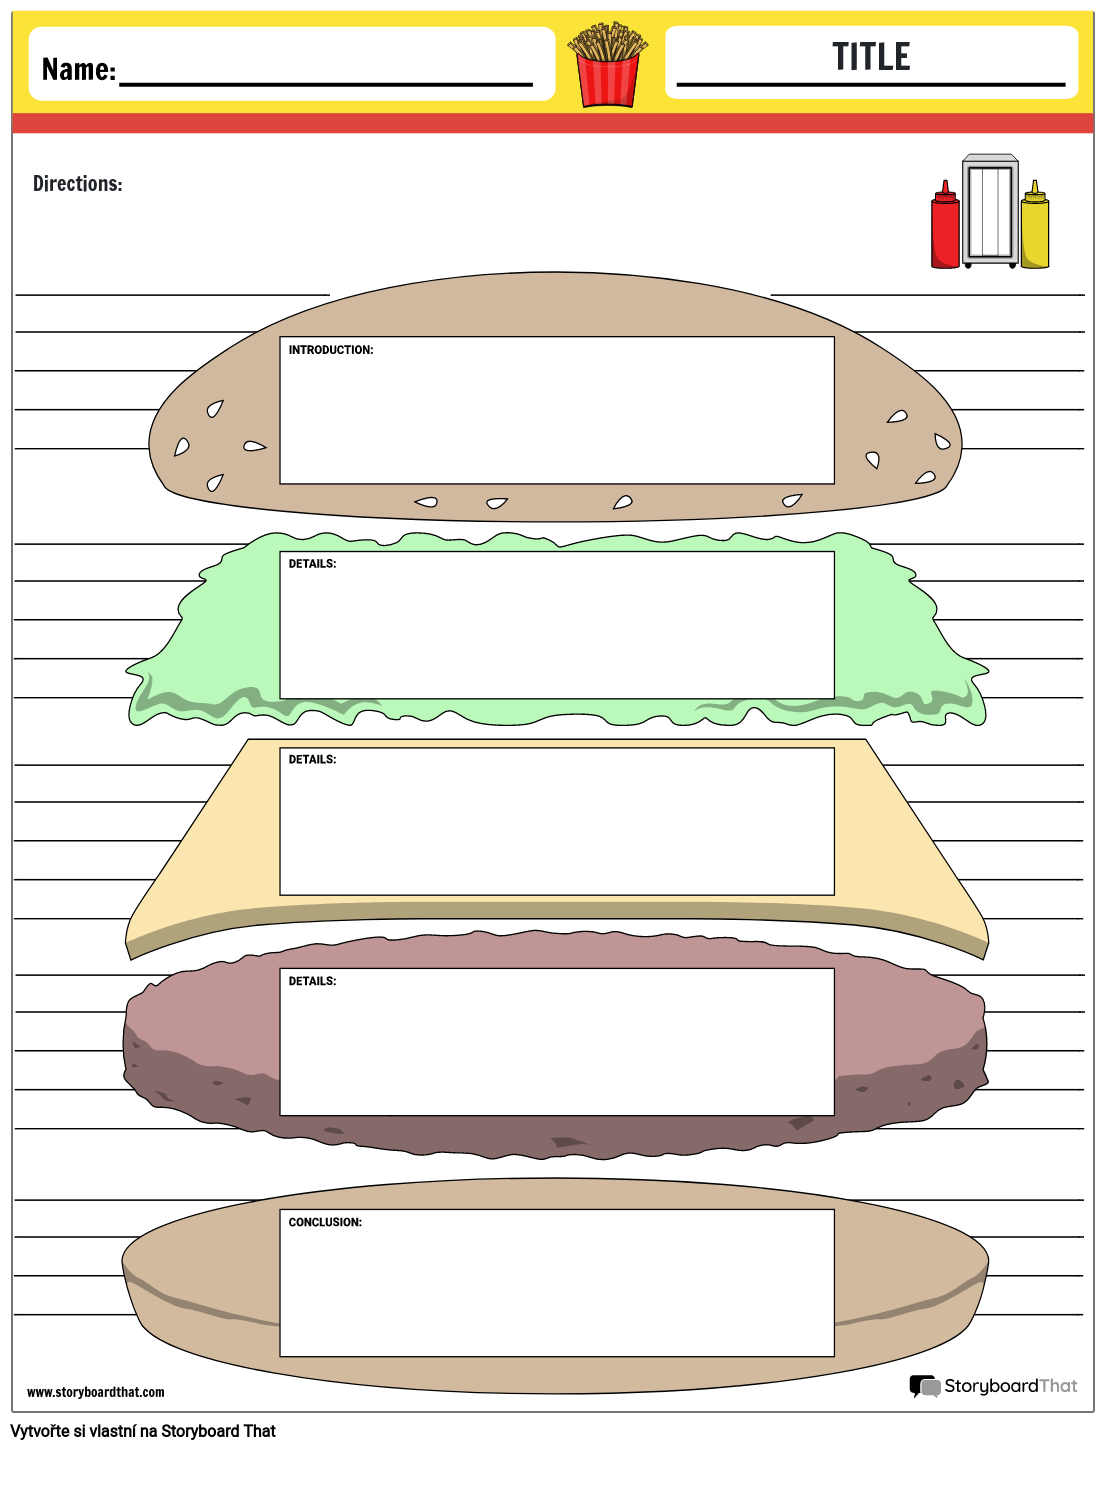 Grafický Organizátor Hamburger